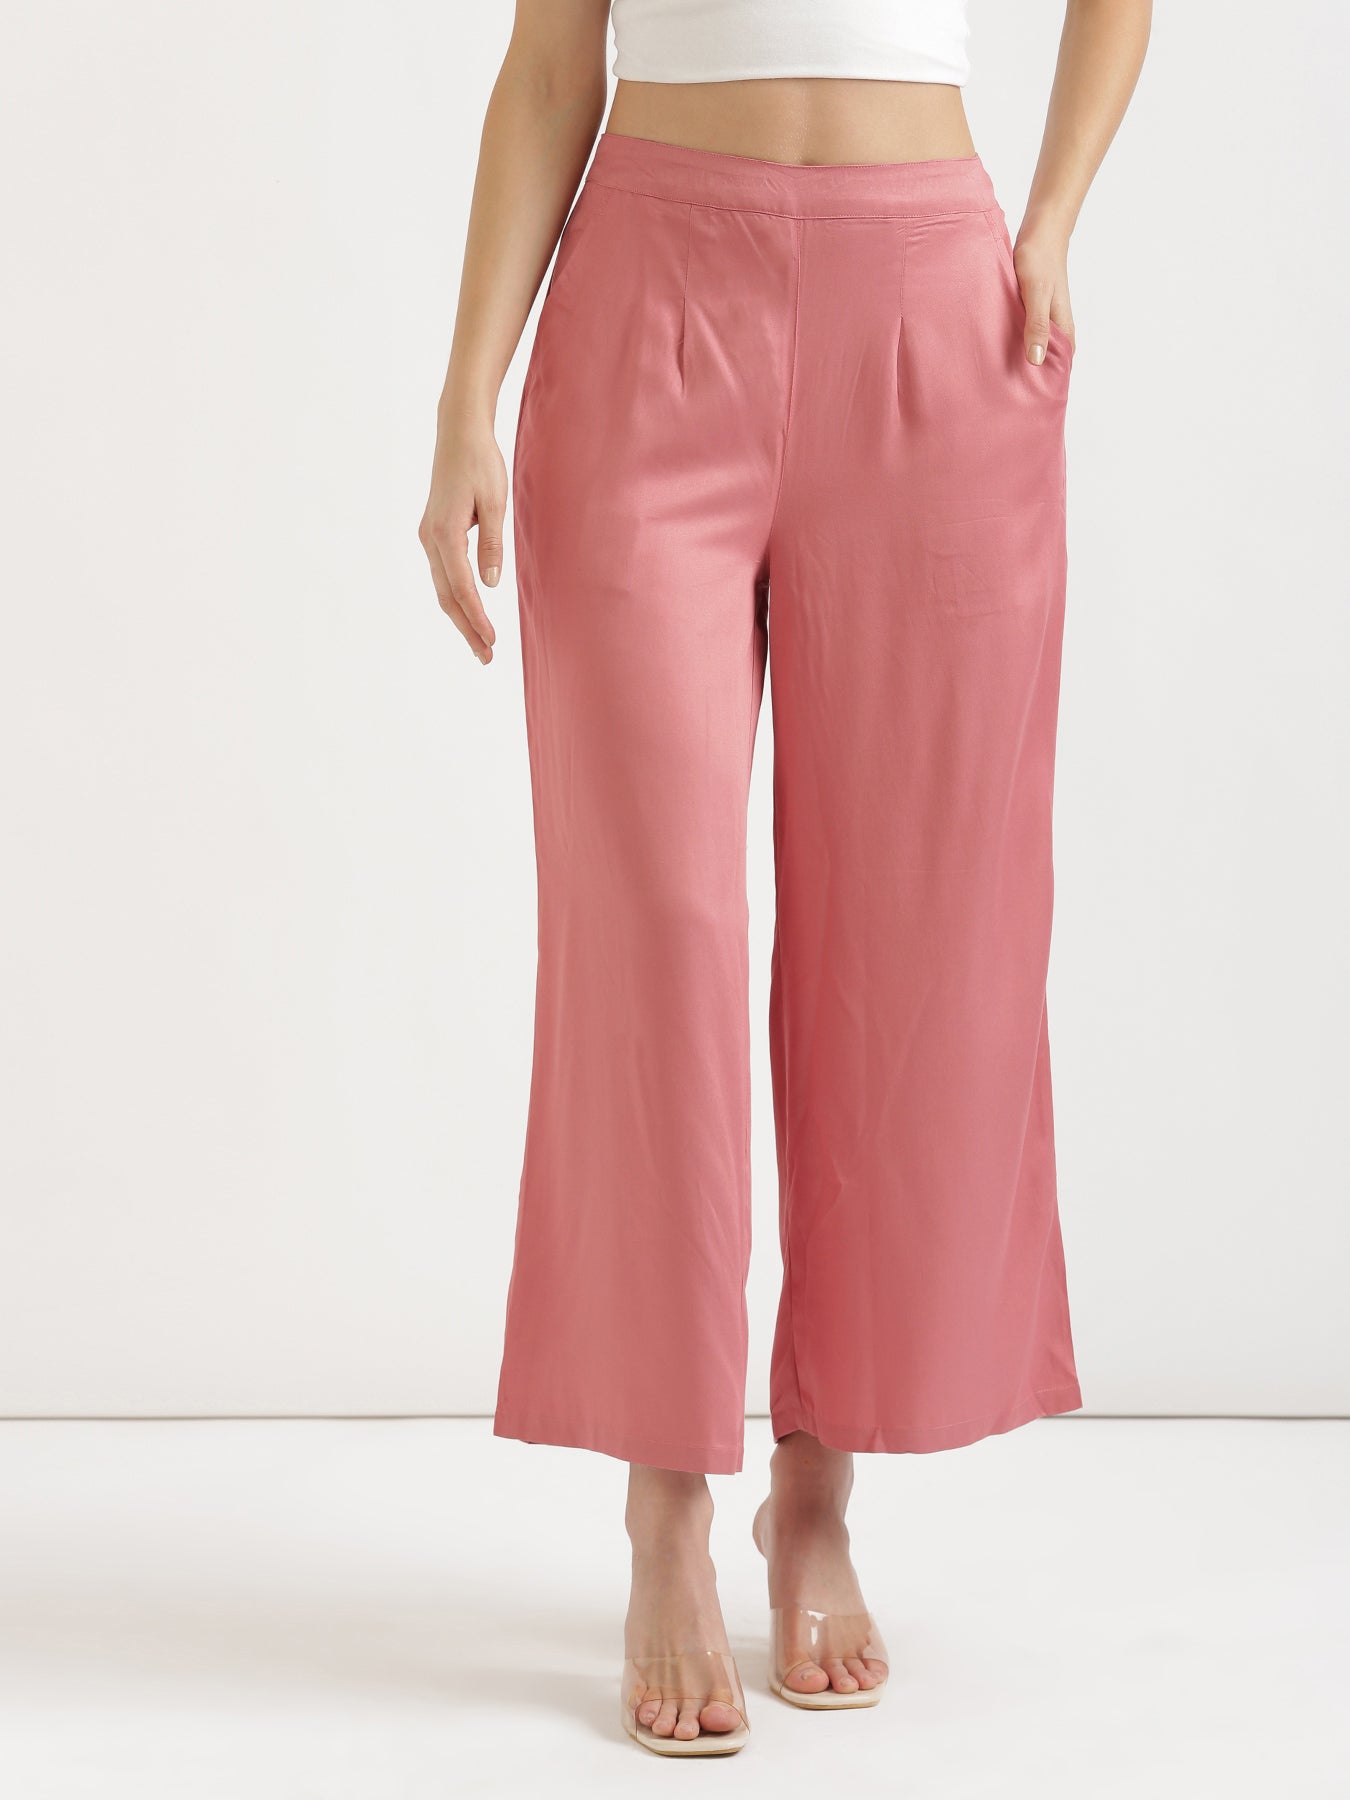 Buy Plus Size Palazzo Pants & Plus Size Women's Pants - Apella